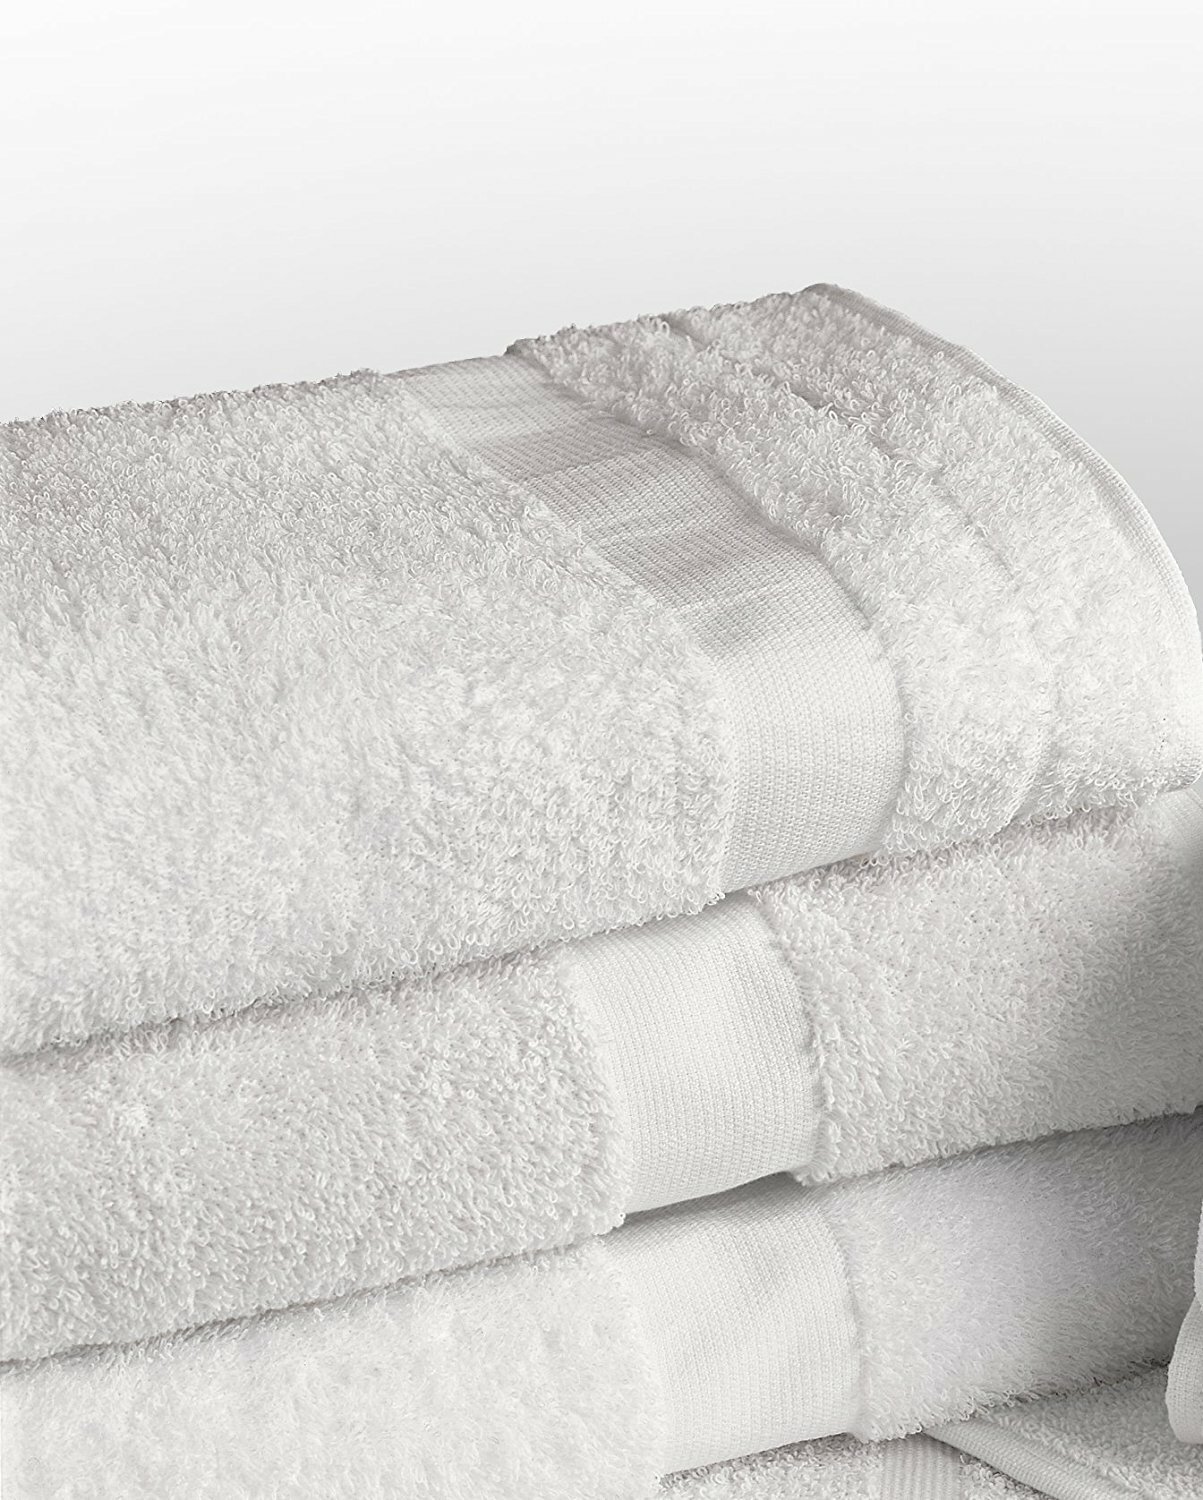 https://assets.wfcdn.com/im/86715088/compr-r85/7615/76157857/martex-cotton-blend-bath-towels.jpg